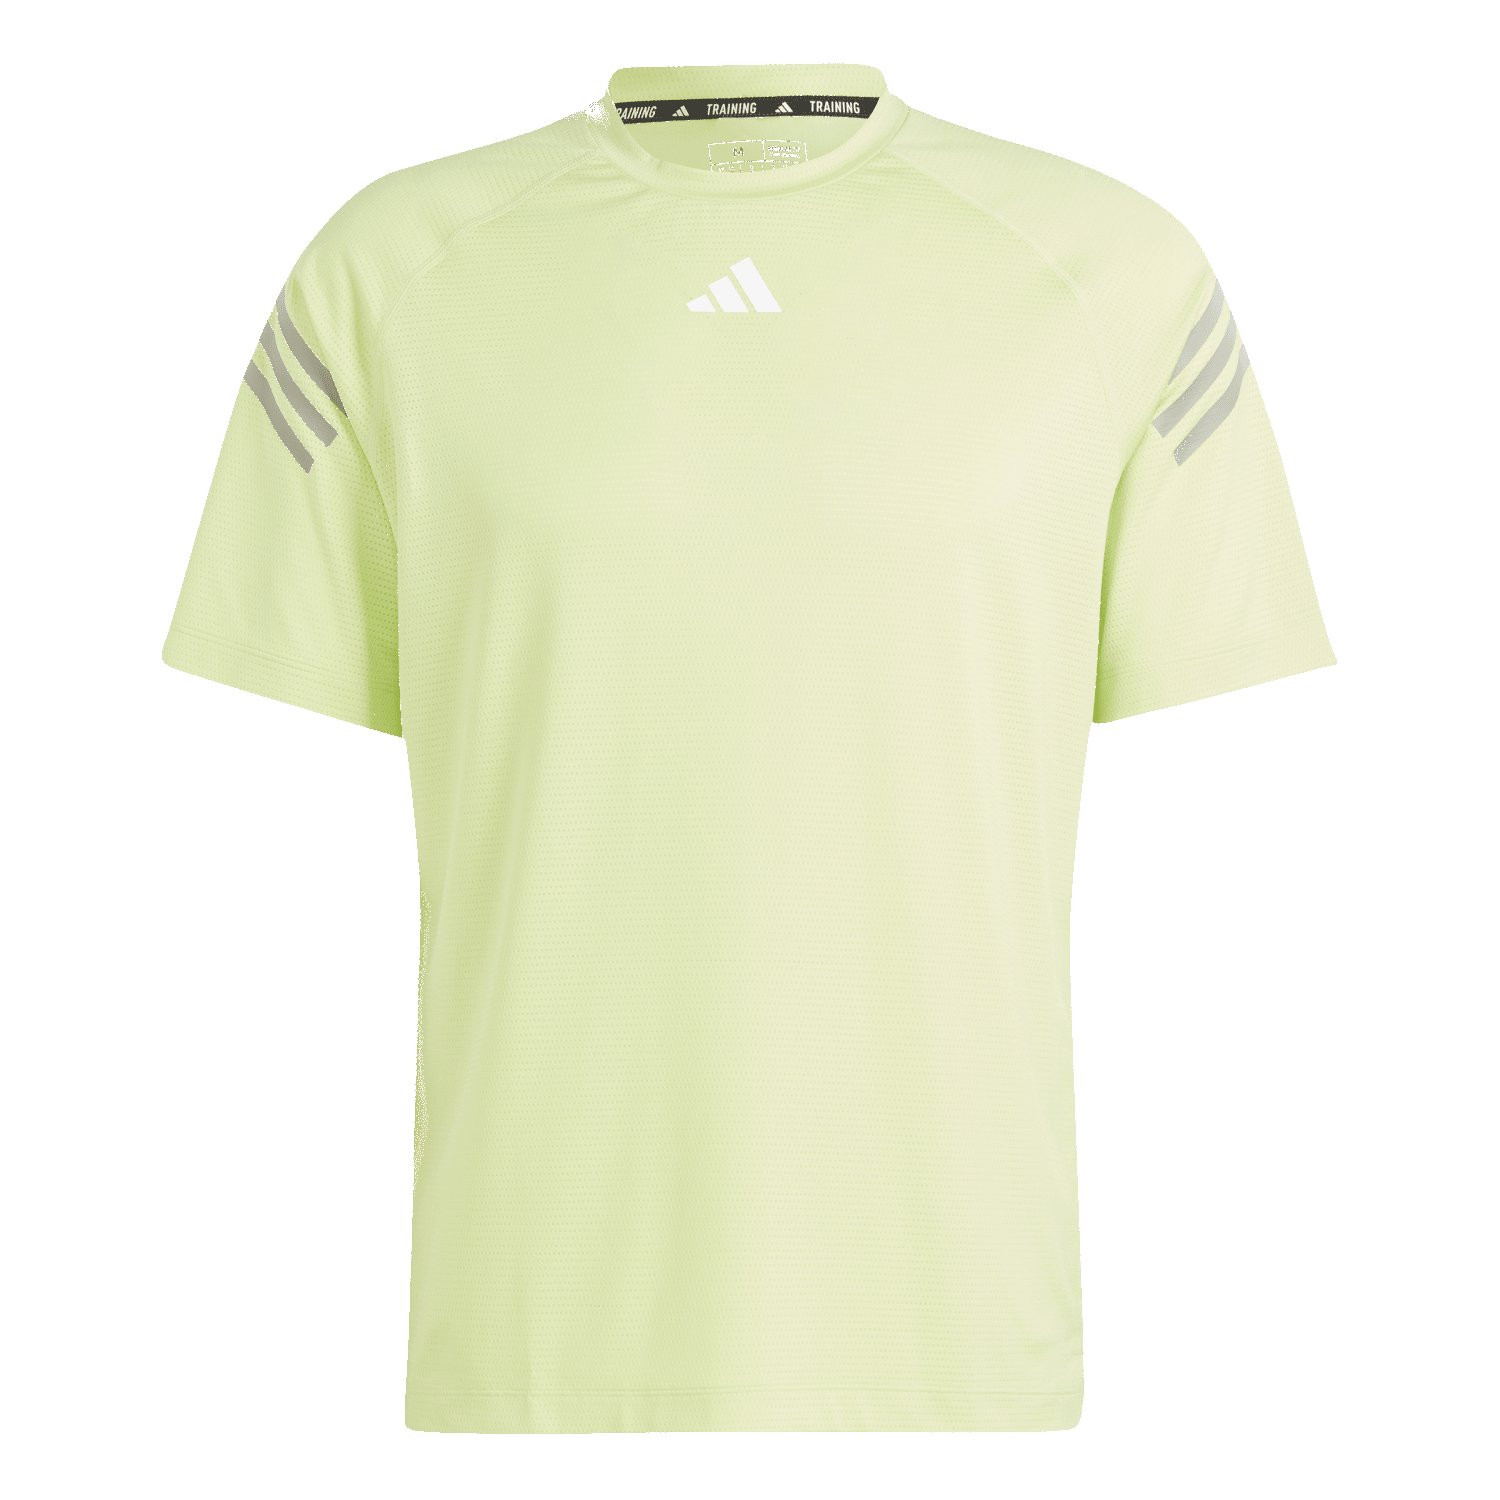 Adidas Trains Icons 3-Streifen Trainings T-Shirt